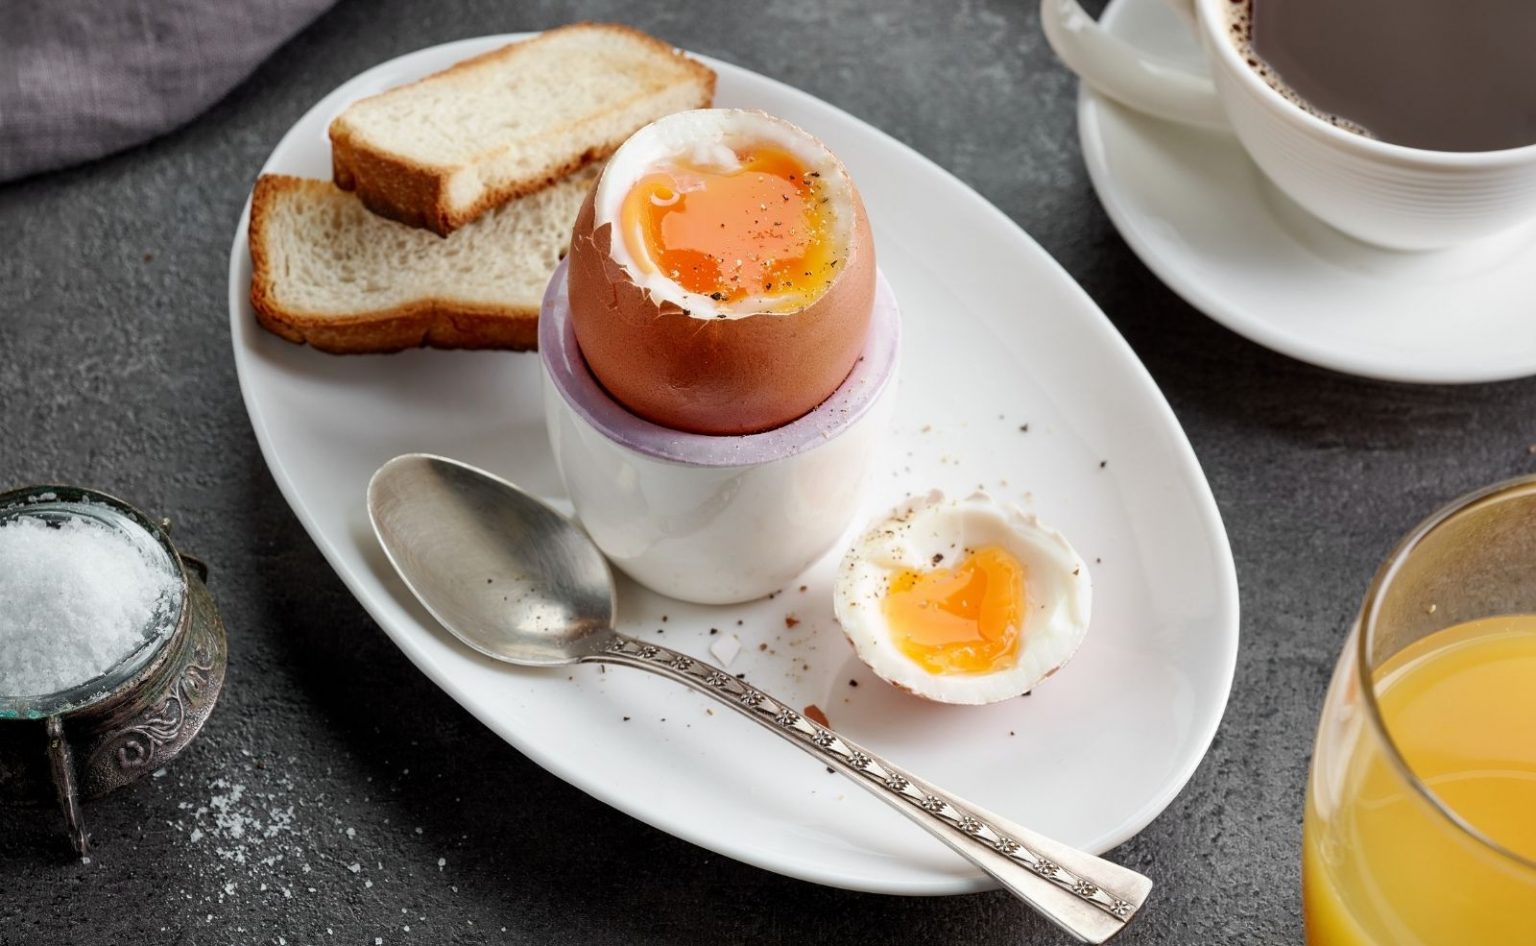 Weiches Ei: Wie lange muss es kochen? - Küchenfinder